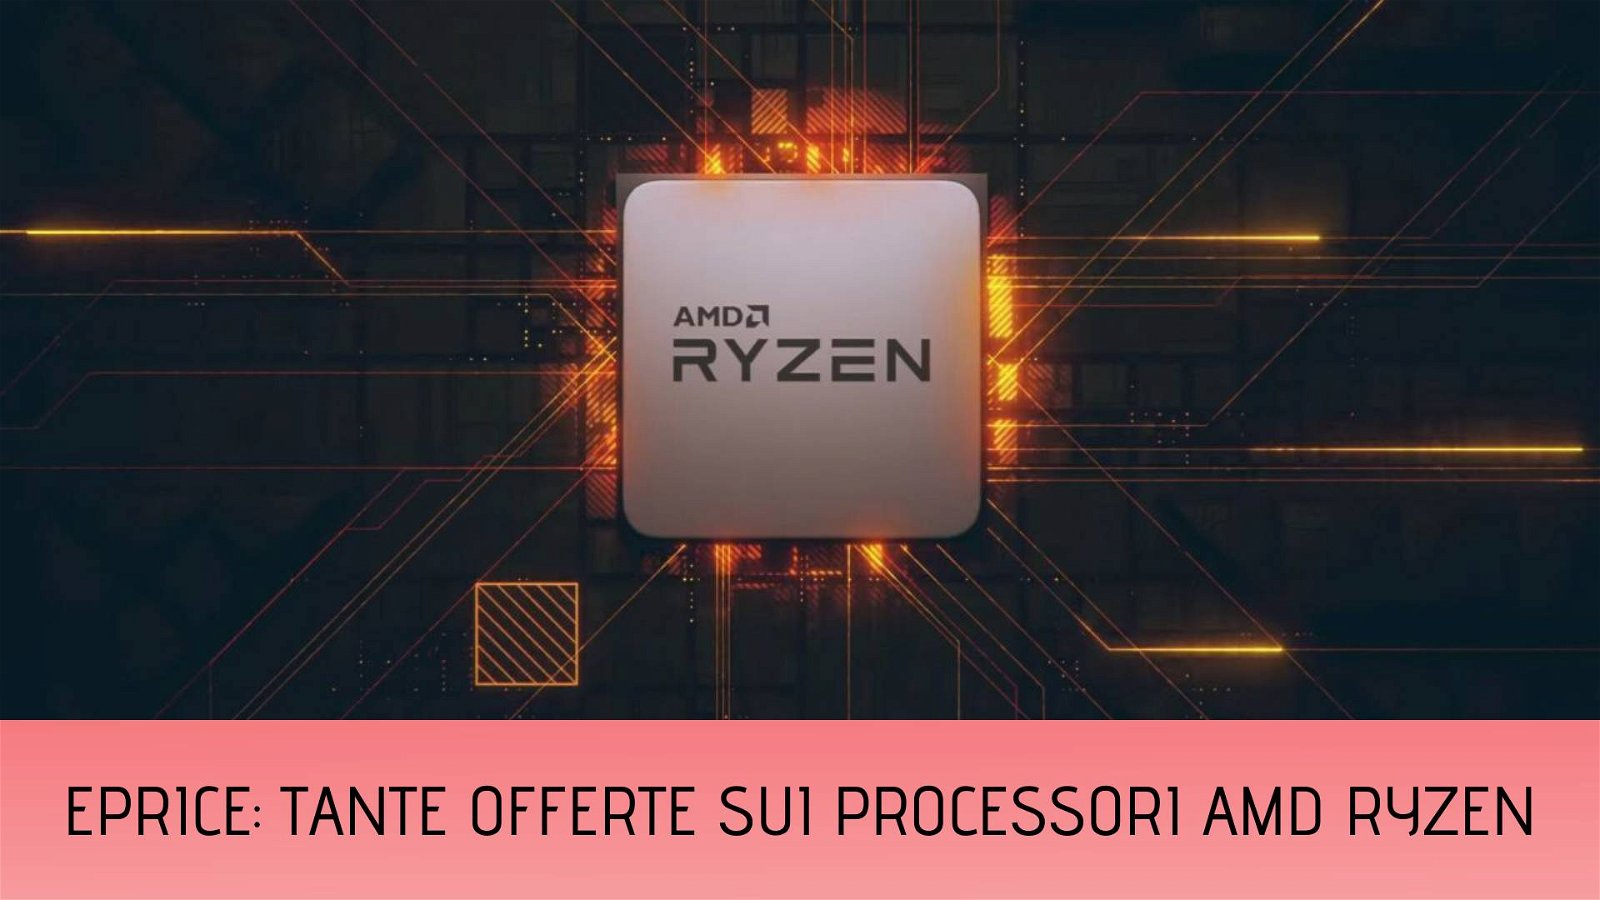 Immagine di AMD Ryzen, super prezzi su ePrice per pochi giorni